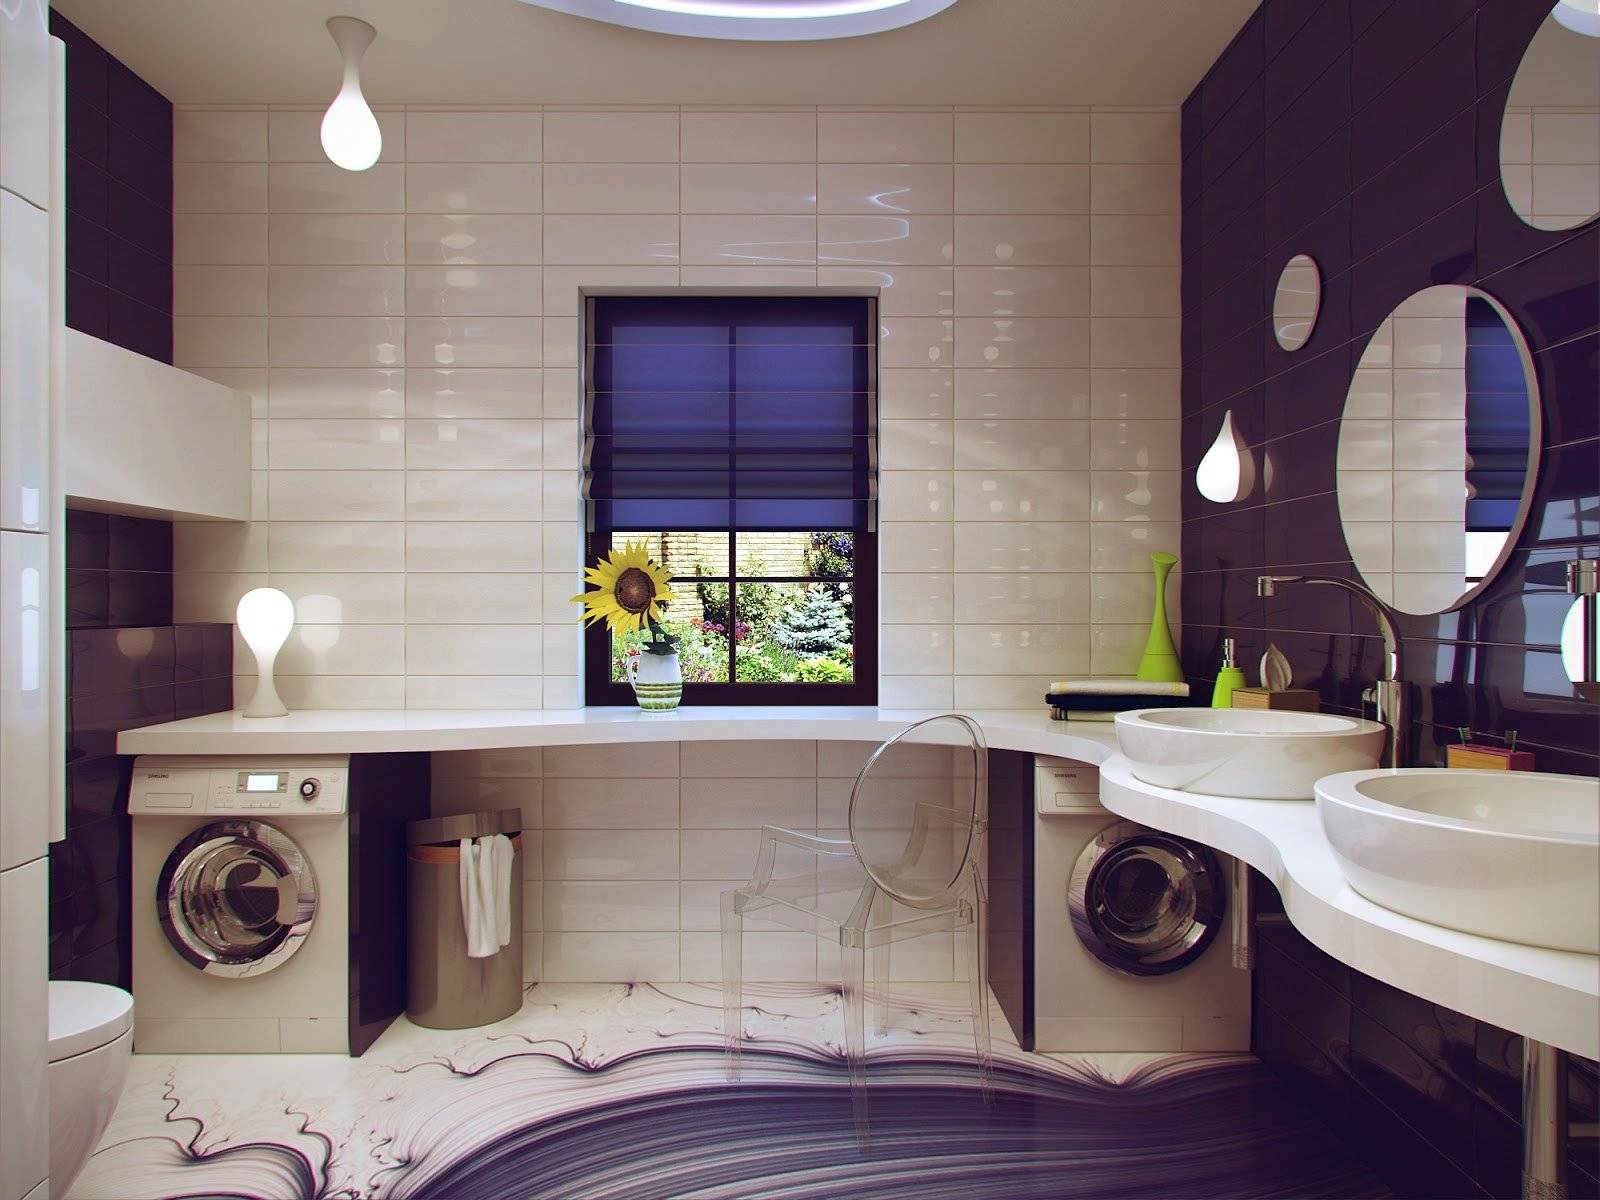 Как обустроить ванную комнату - идеи дизайна и оформления ванных